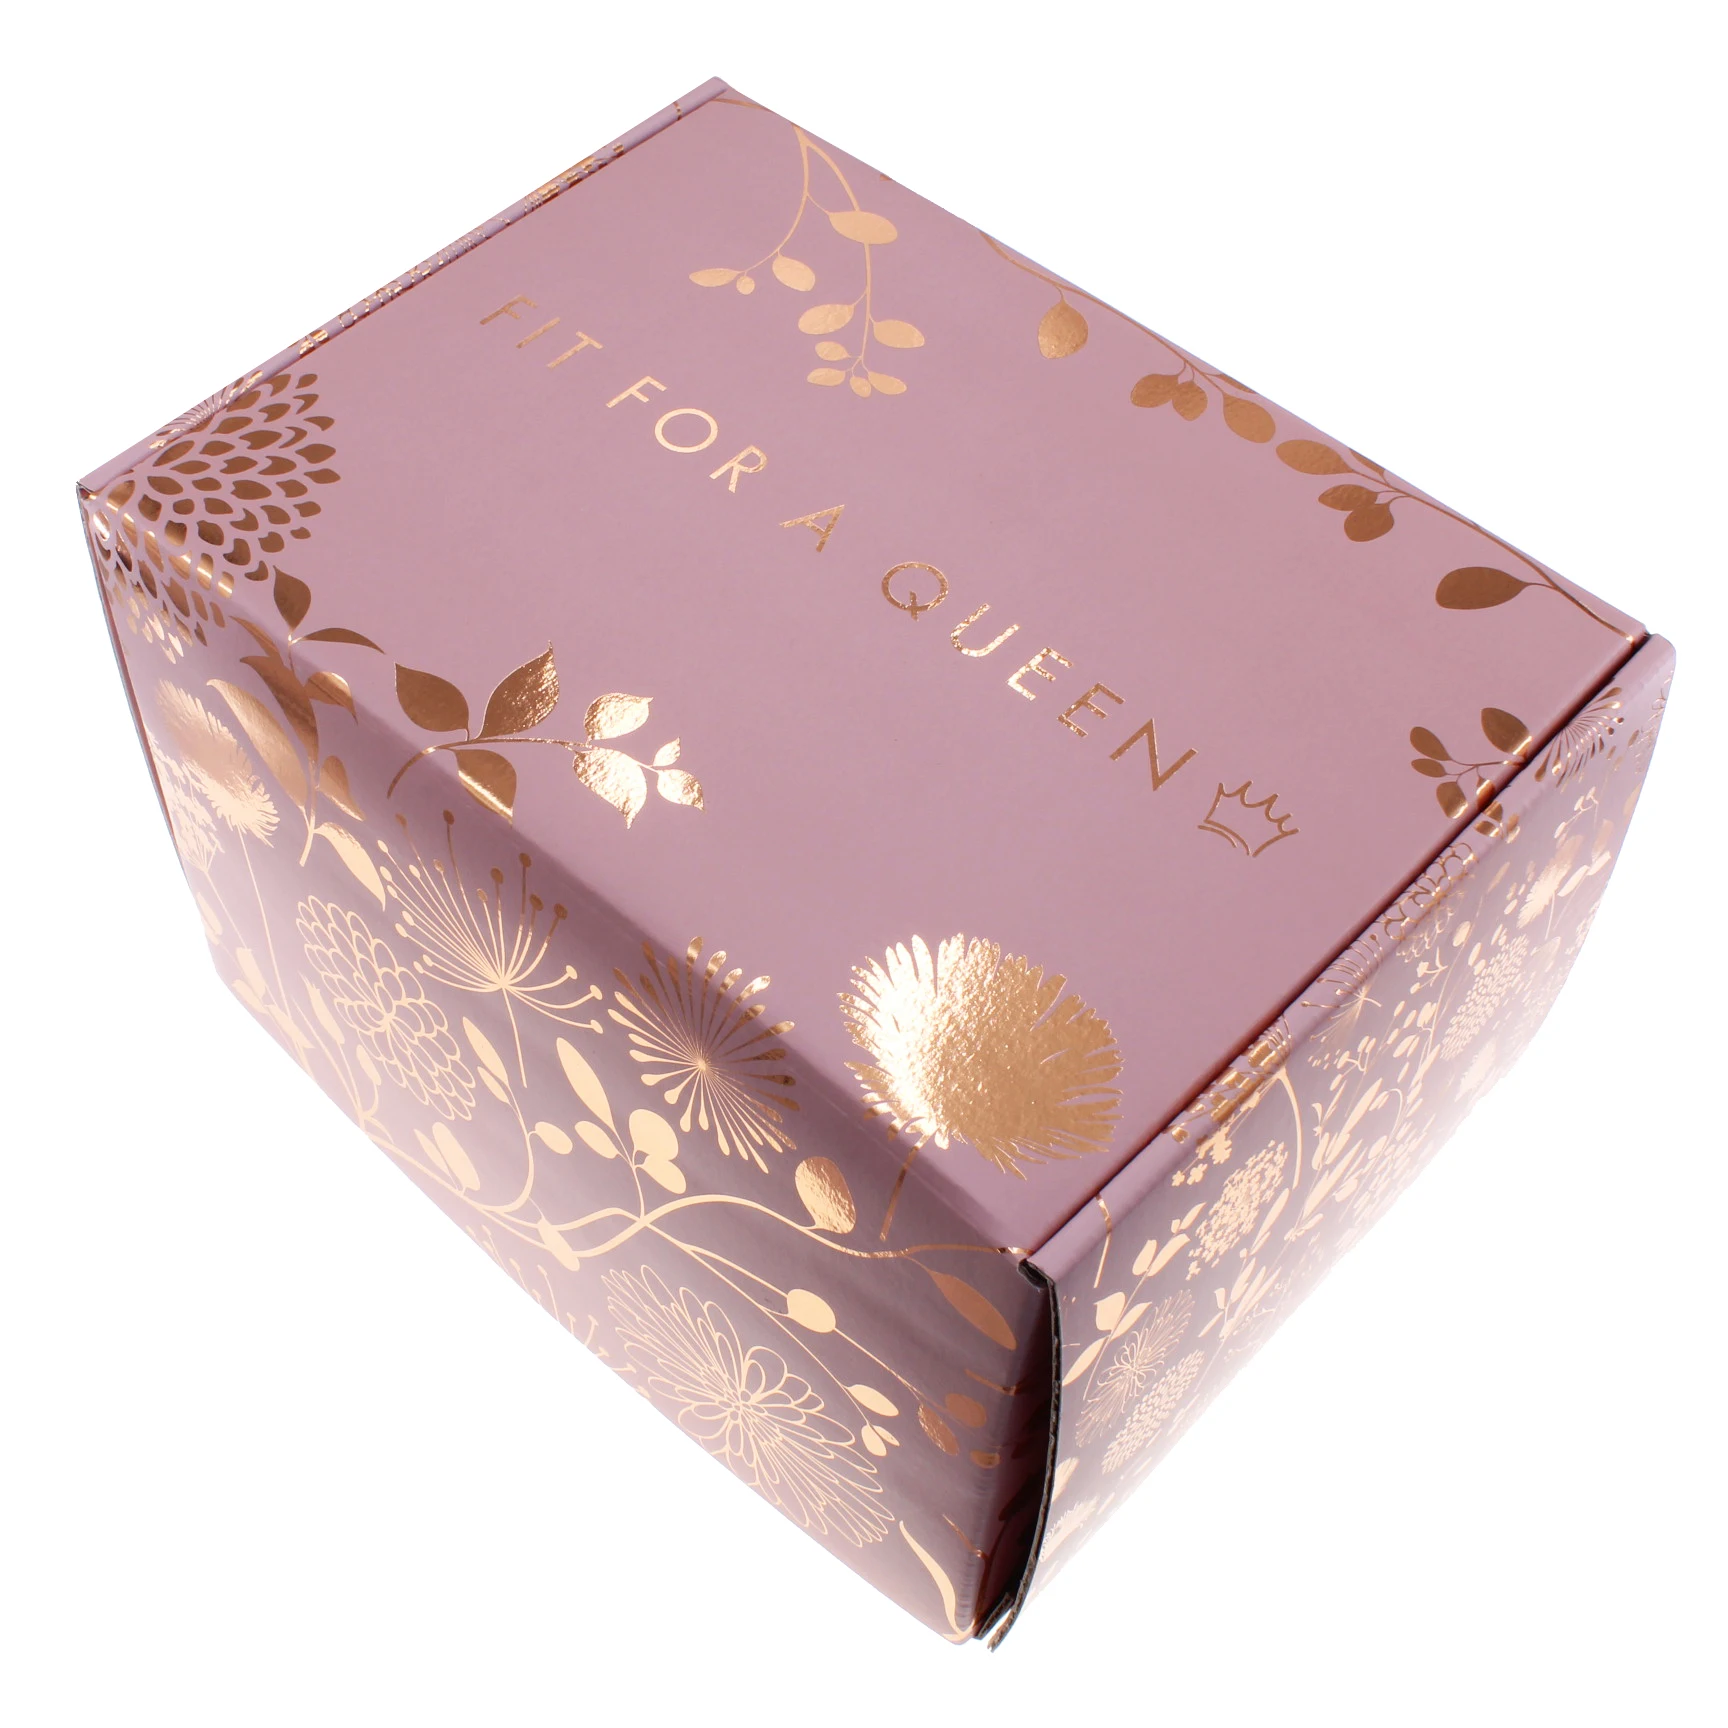 Rose Gold Foil Script Card Box